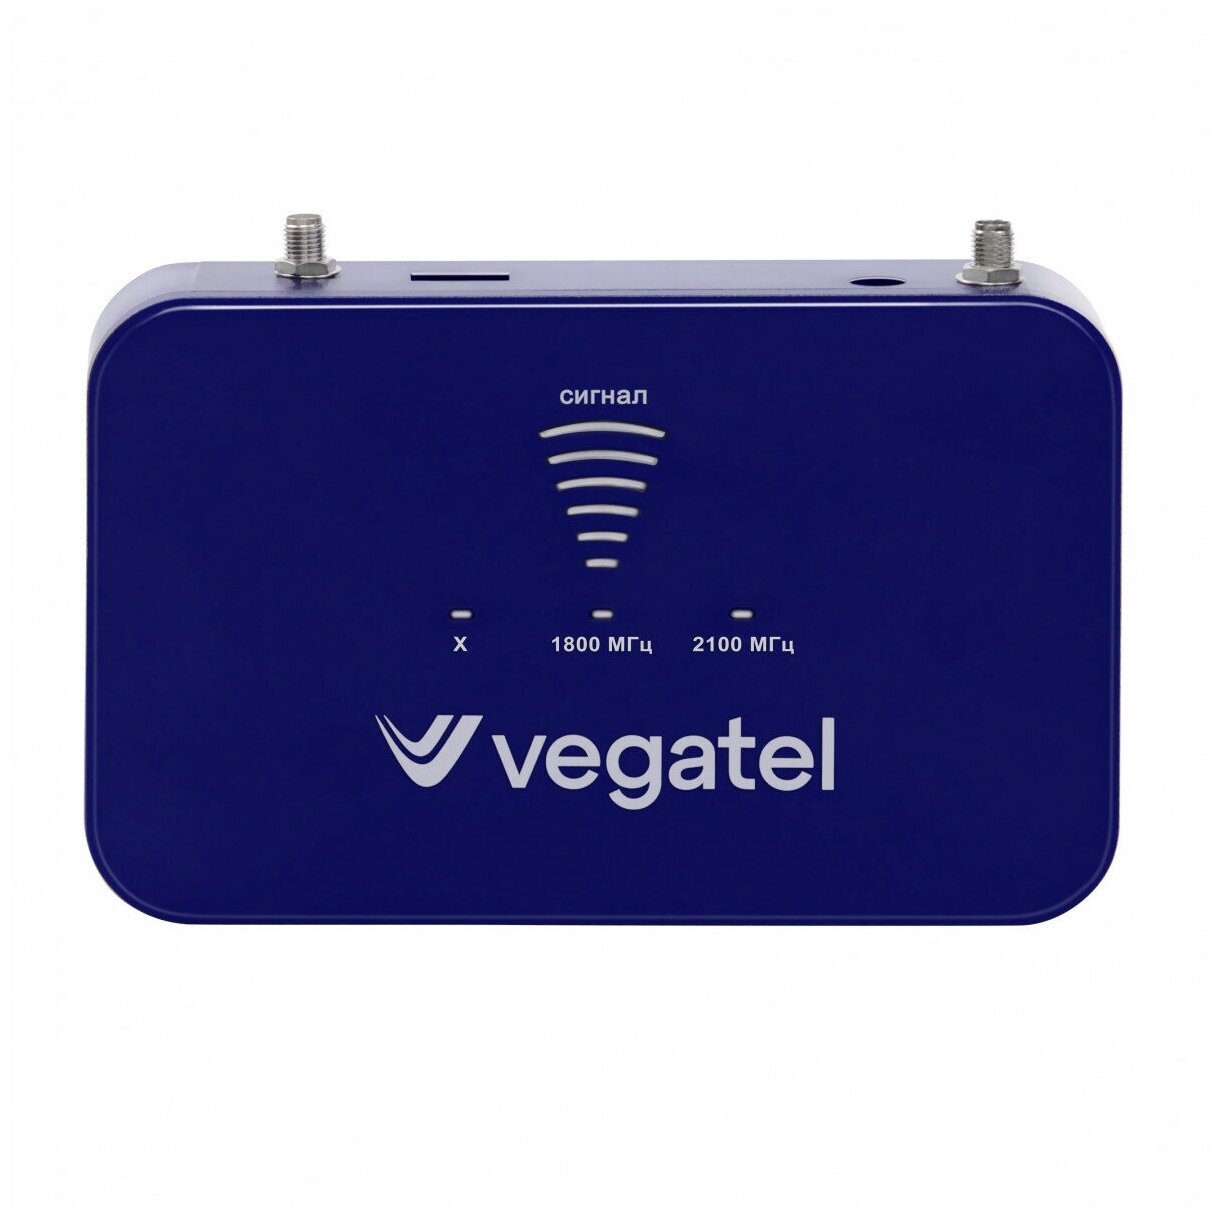 Комплект VEGATEL PL-1800/2100 усилитель сотовой связи 2G и интернета 3G 4G LTE